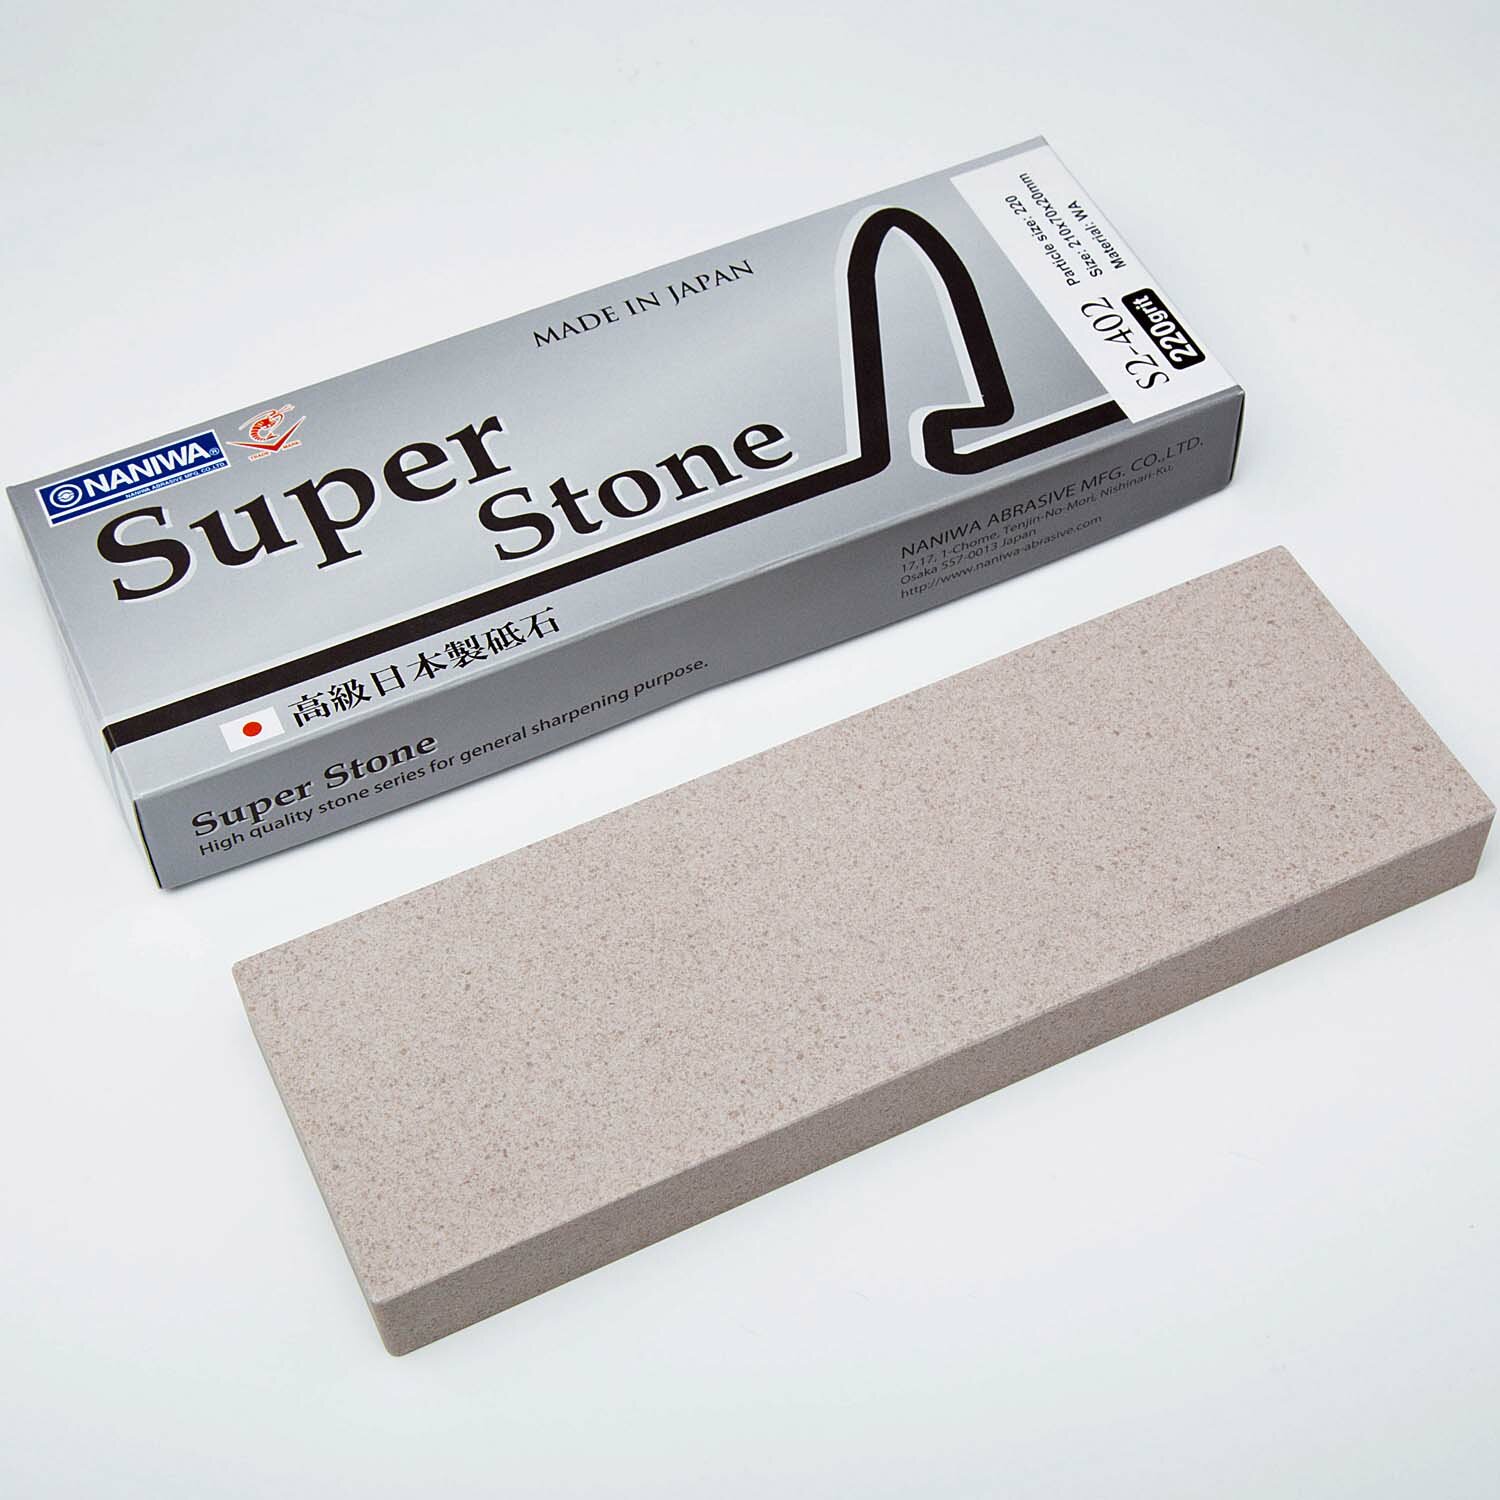 Водный керамический точильный камень для заточки ножей Naniwa Super Stone #220, S2-402